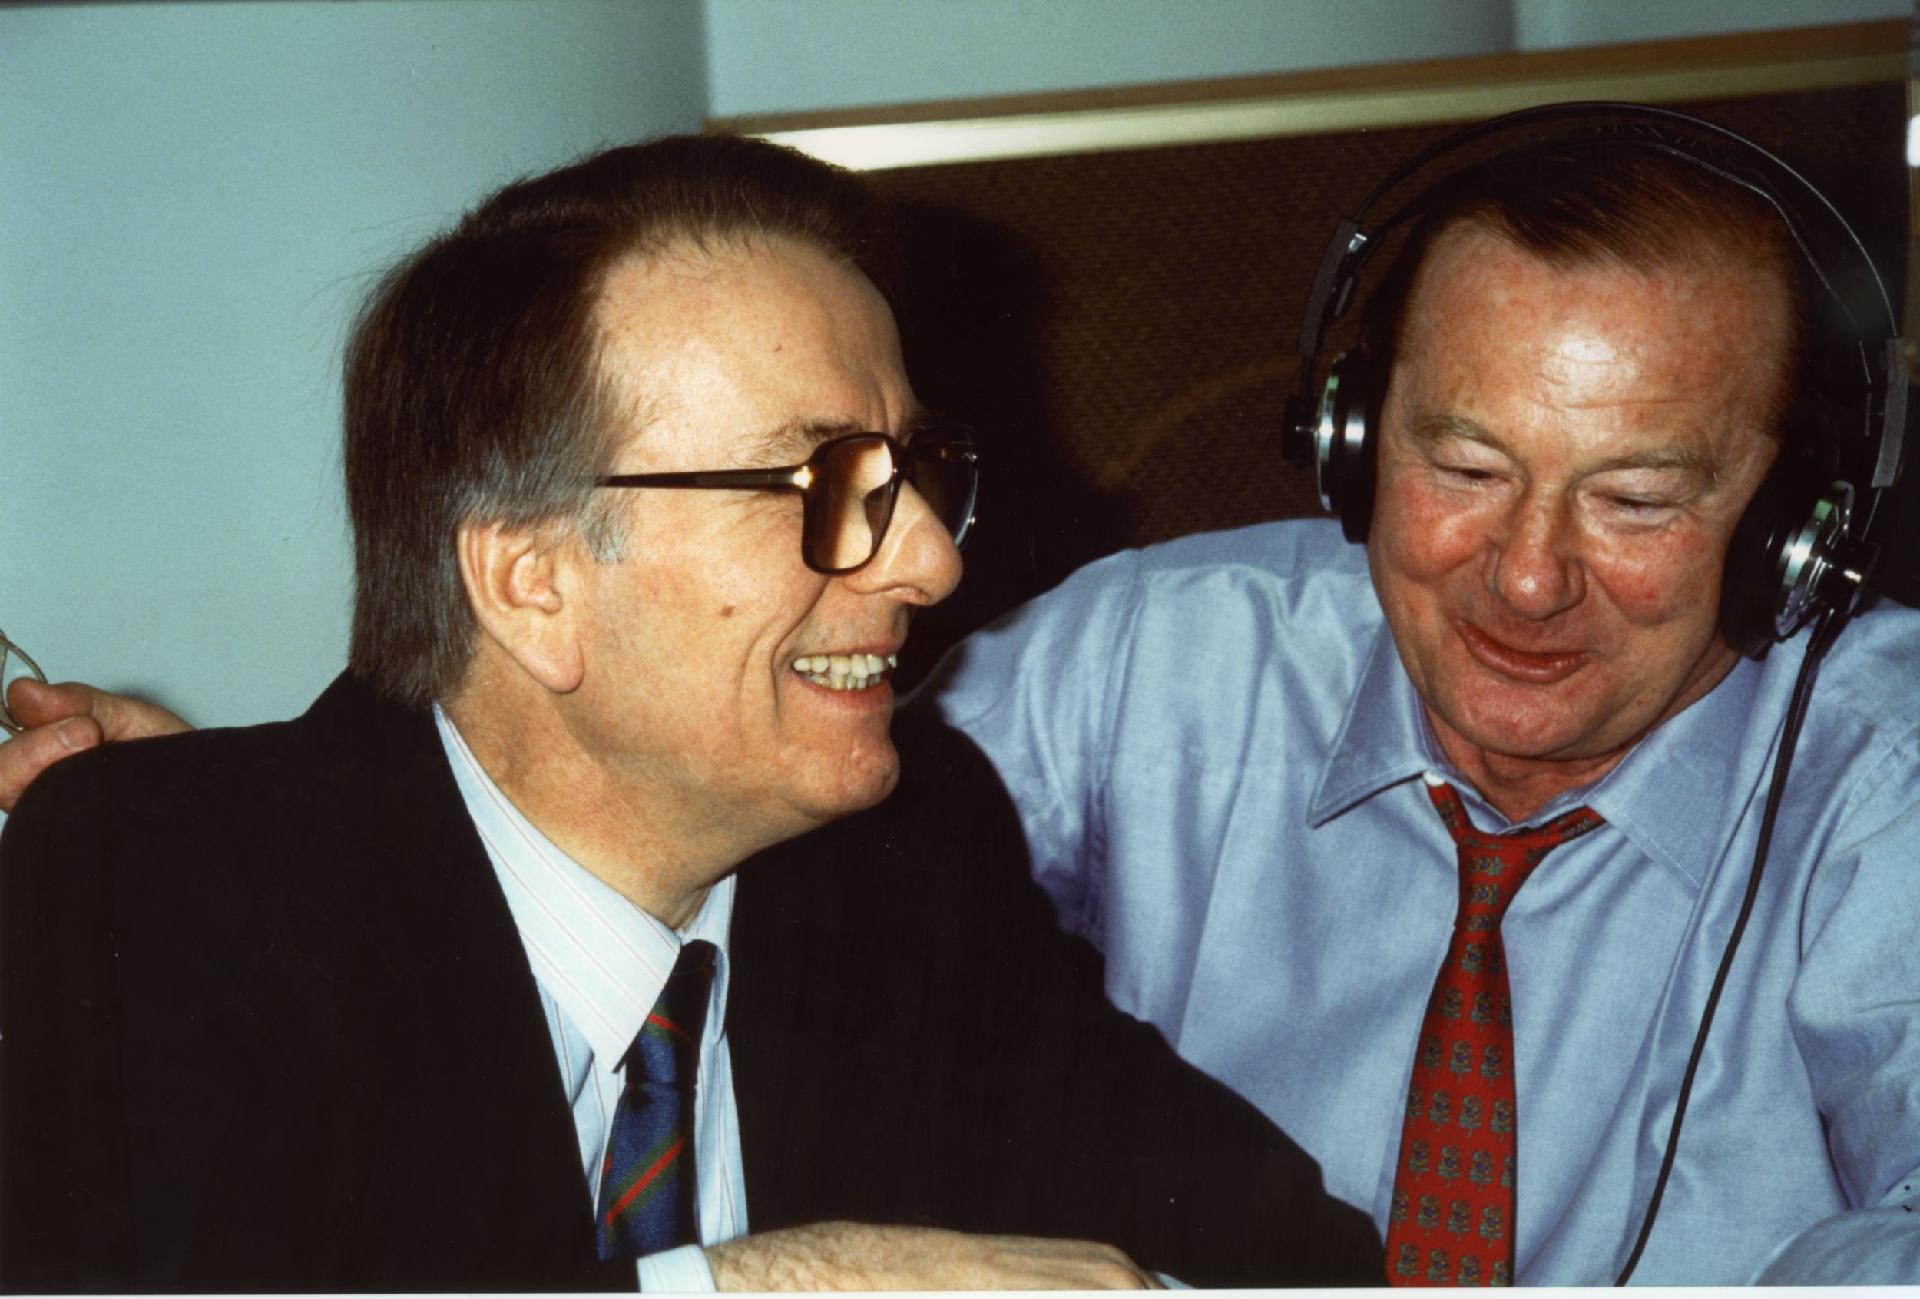 Gianni Bisiach con Corrado Guerzoni, segretario di Aldo Moro e direttore di Radio 2, a &quot;Radio anch&apos;io&quot; nello studio 8 di via Asiago n. 10 a Roma nel 1990